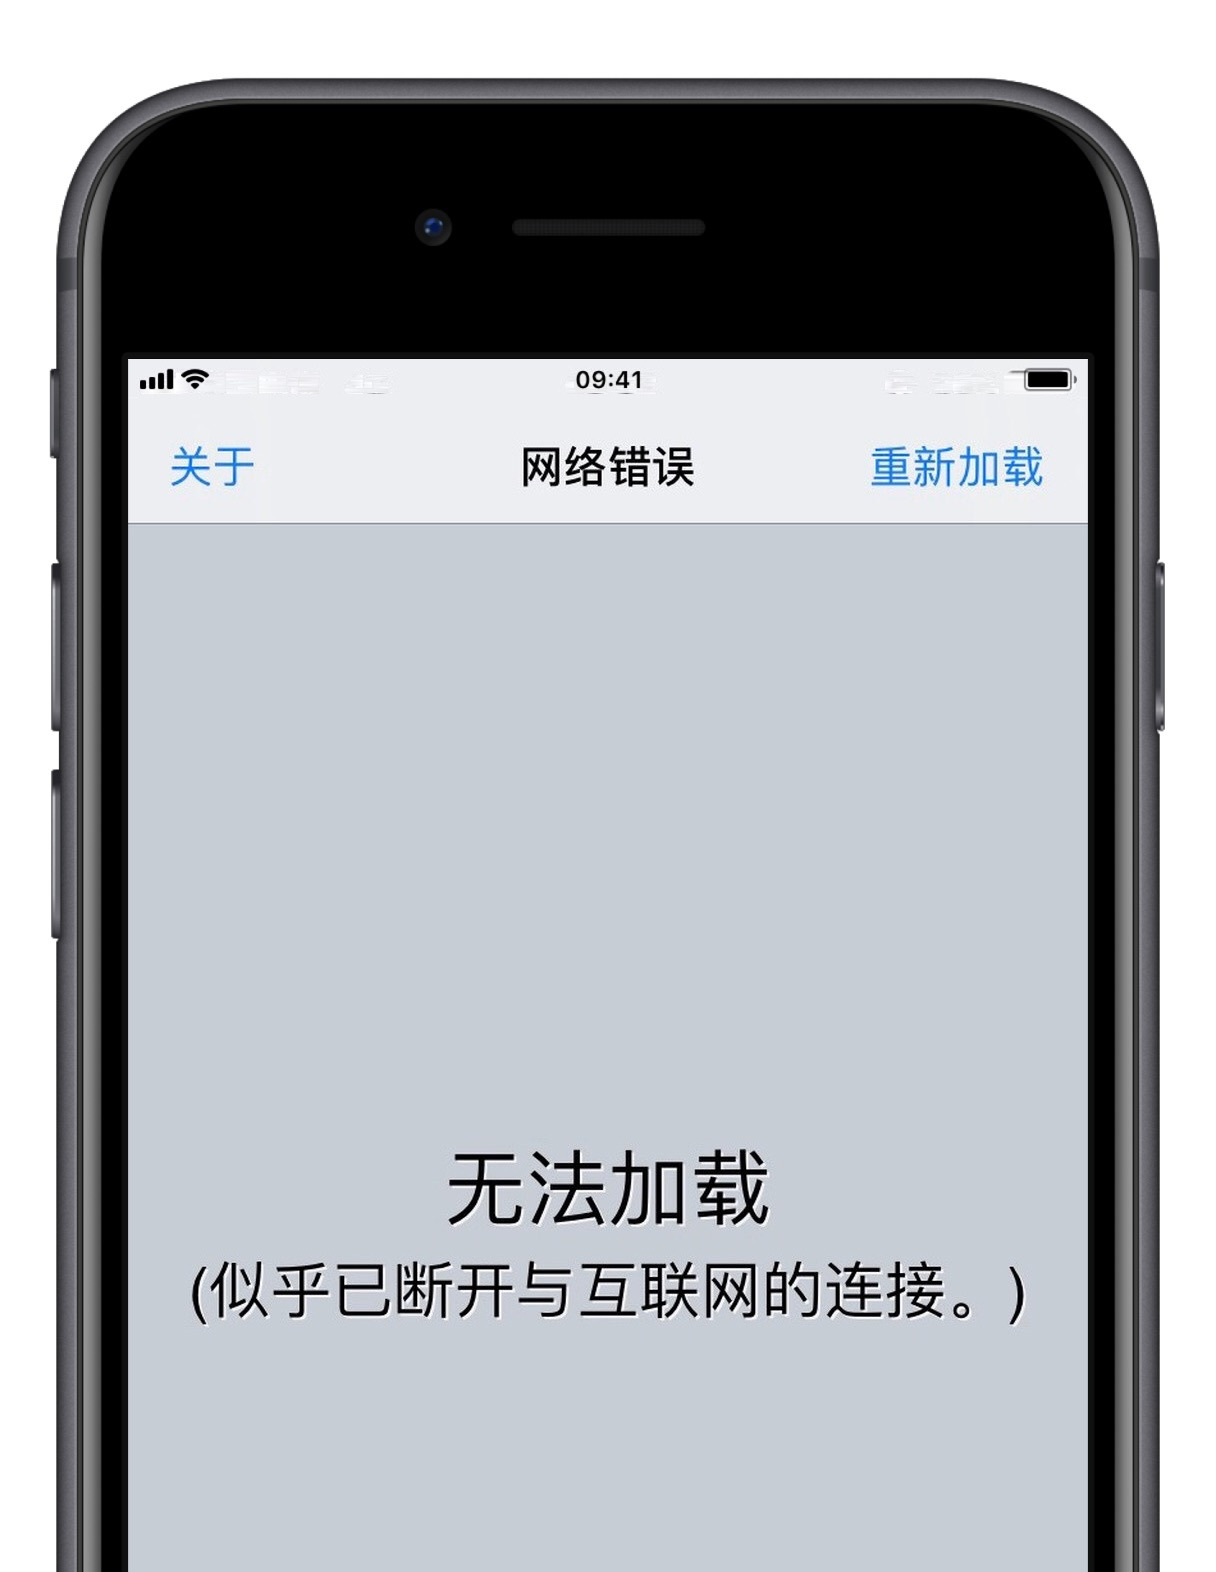 iOS 12.1.3-12.2 测试版越狱工具使用注意事项